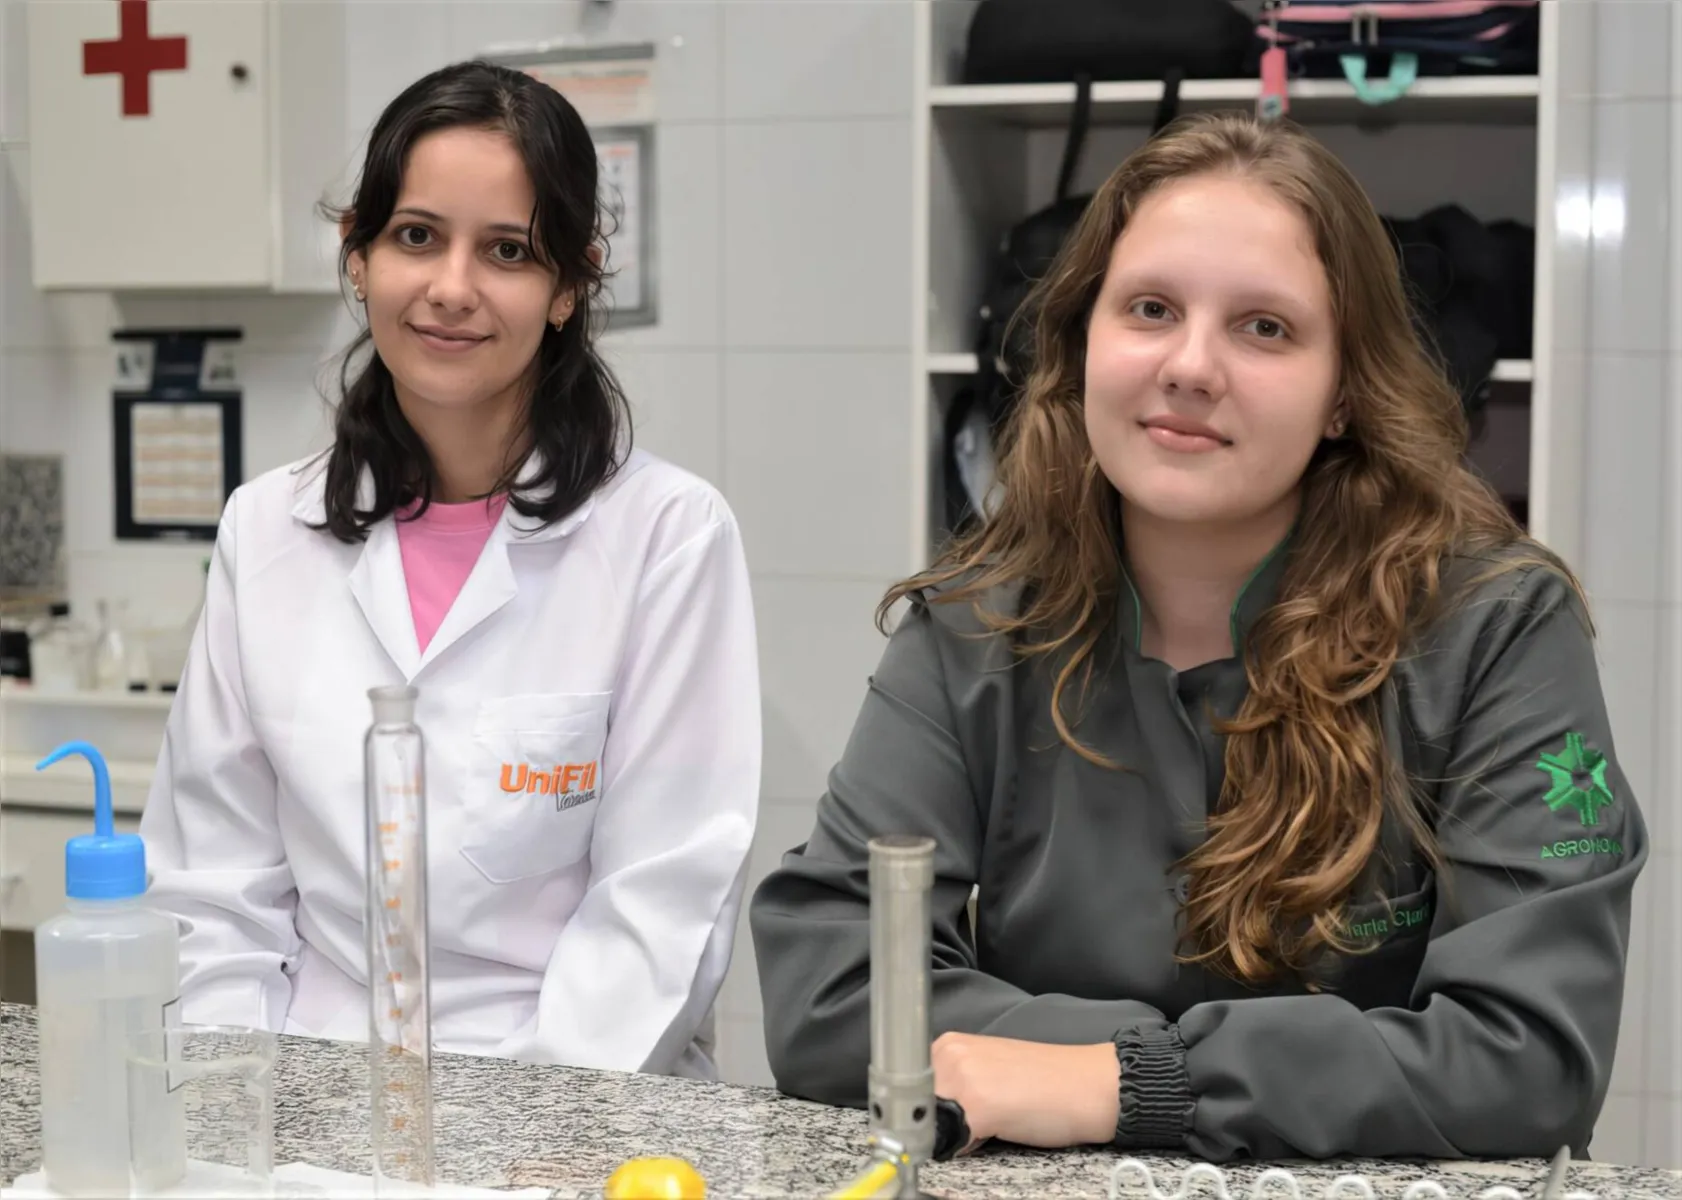 Também em atividade no laboratório,  as alunas do curso Yasmin Santana Marques da Silva e Maria Clara Manhani Pereira